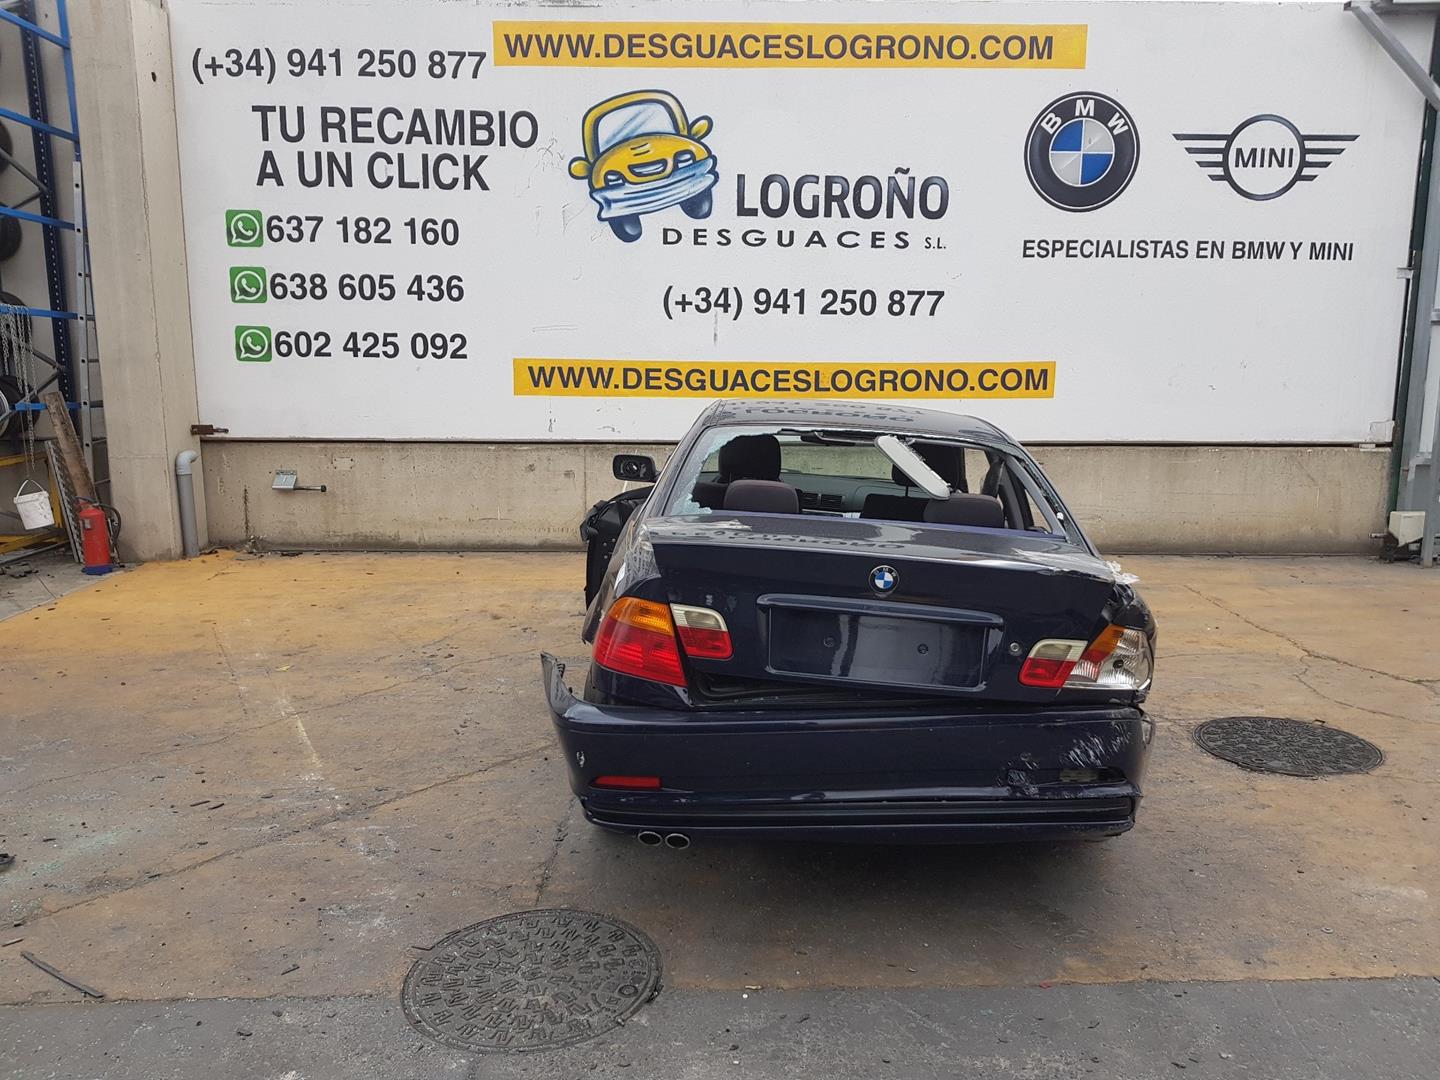 BMW 3 Series E46 (1997-2006) поворота переключение  61318363668, 8363668 19872786